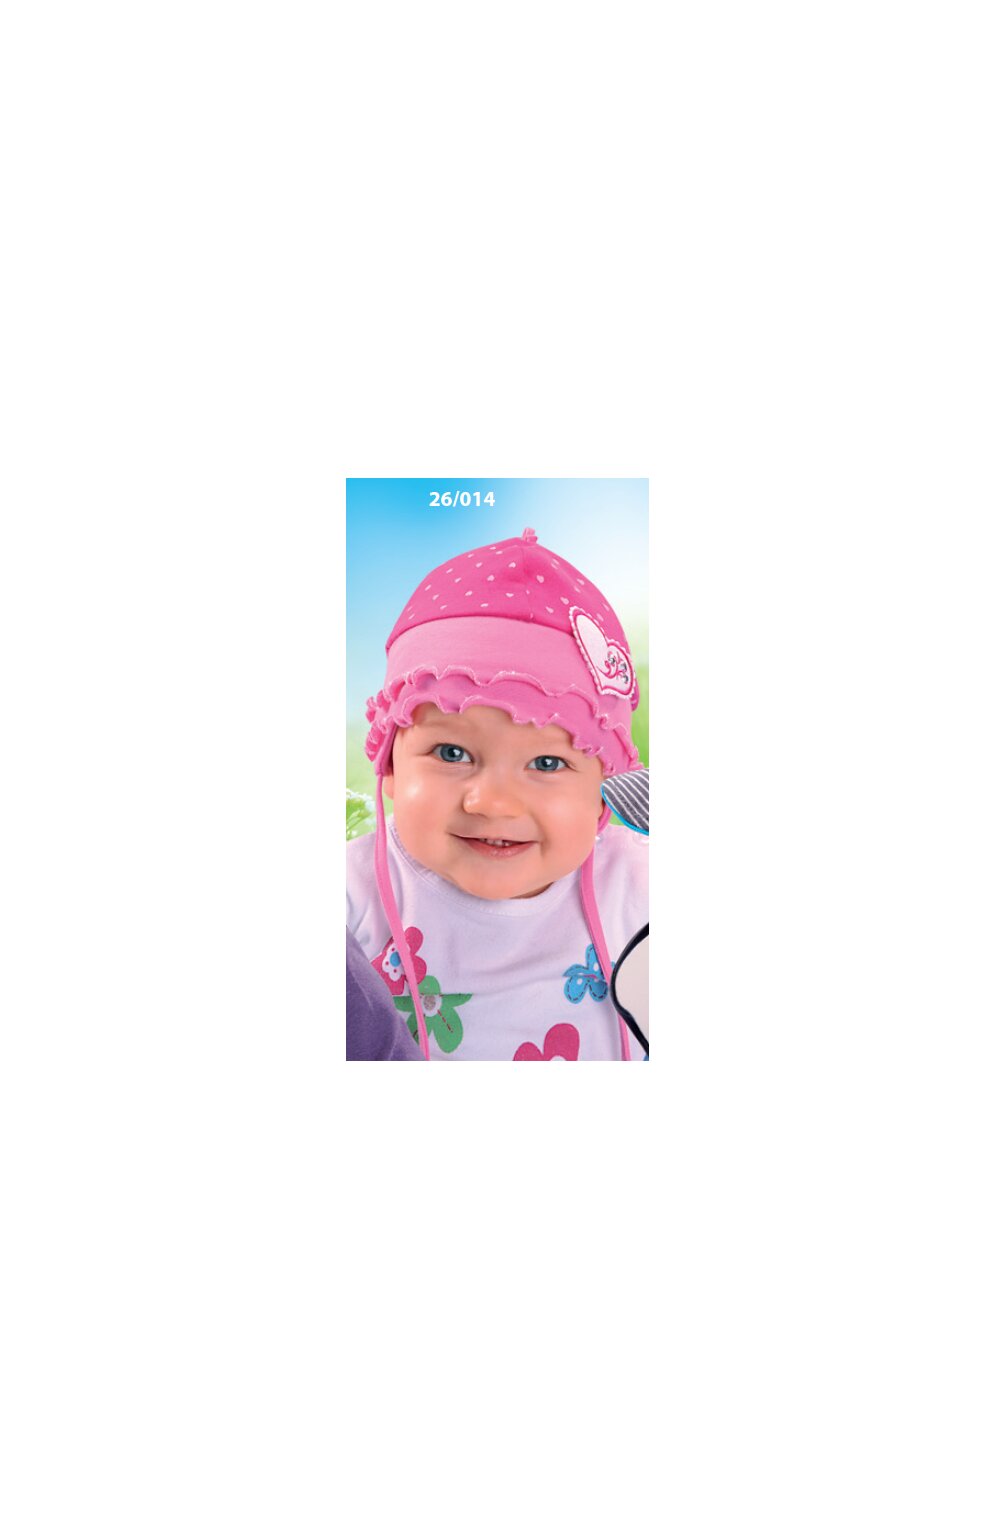 Caciula din bumbac pentru bebelusi 1-12 luni – AJS 26-014 roz imagine noua 2022